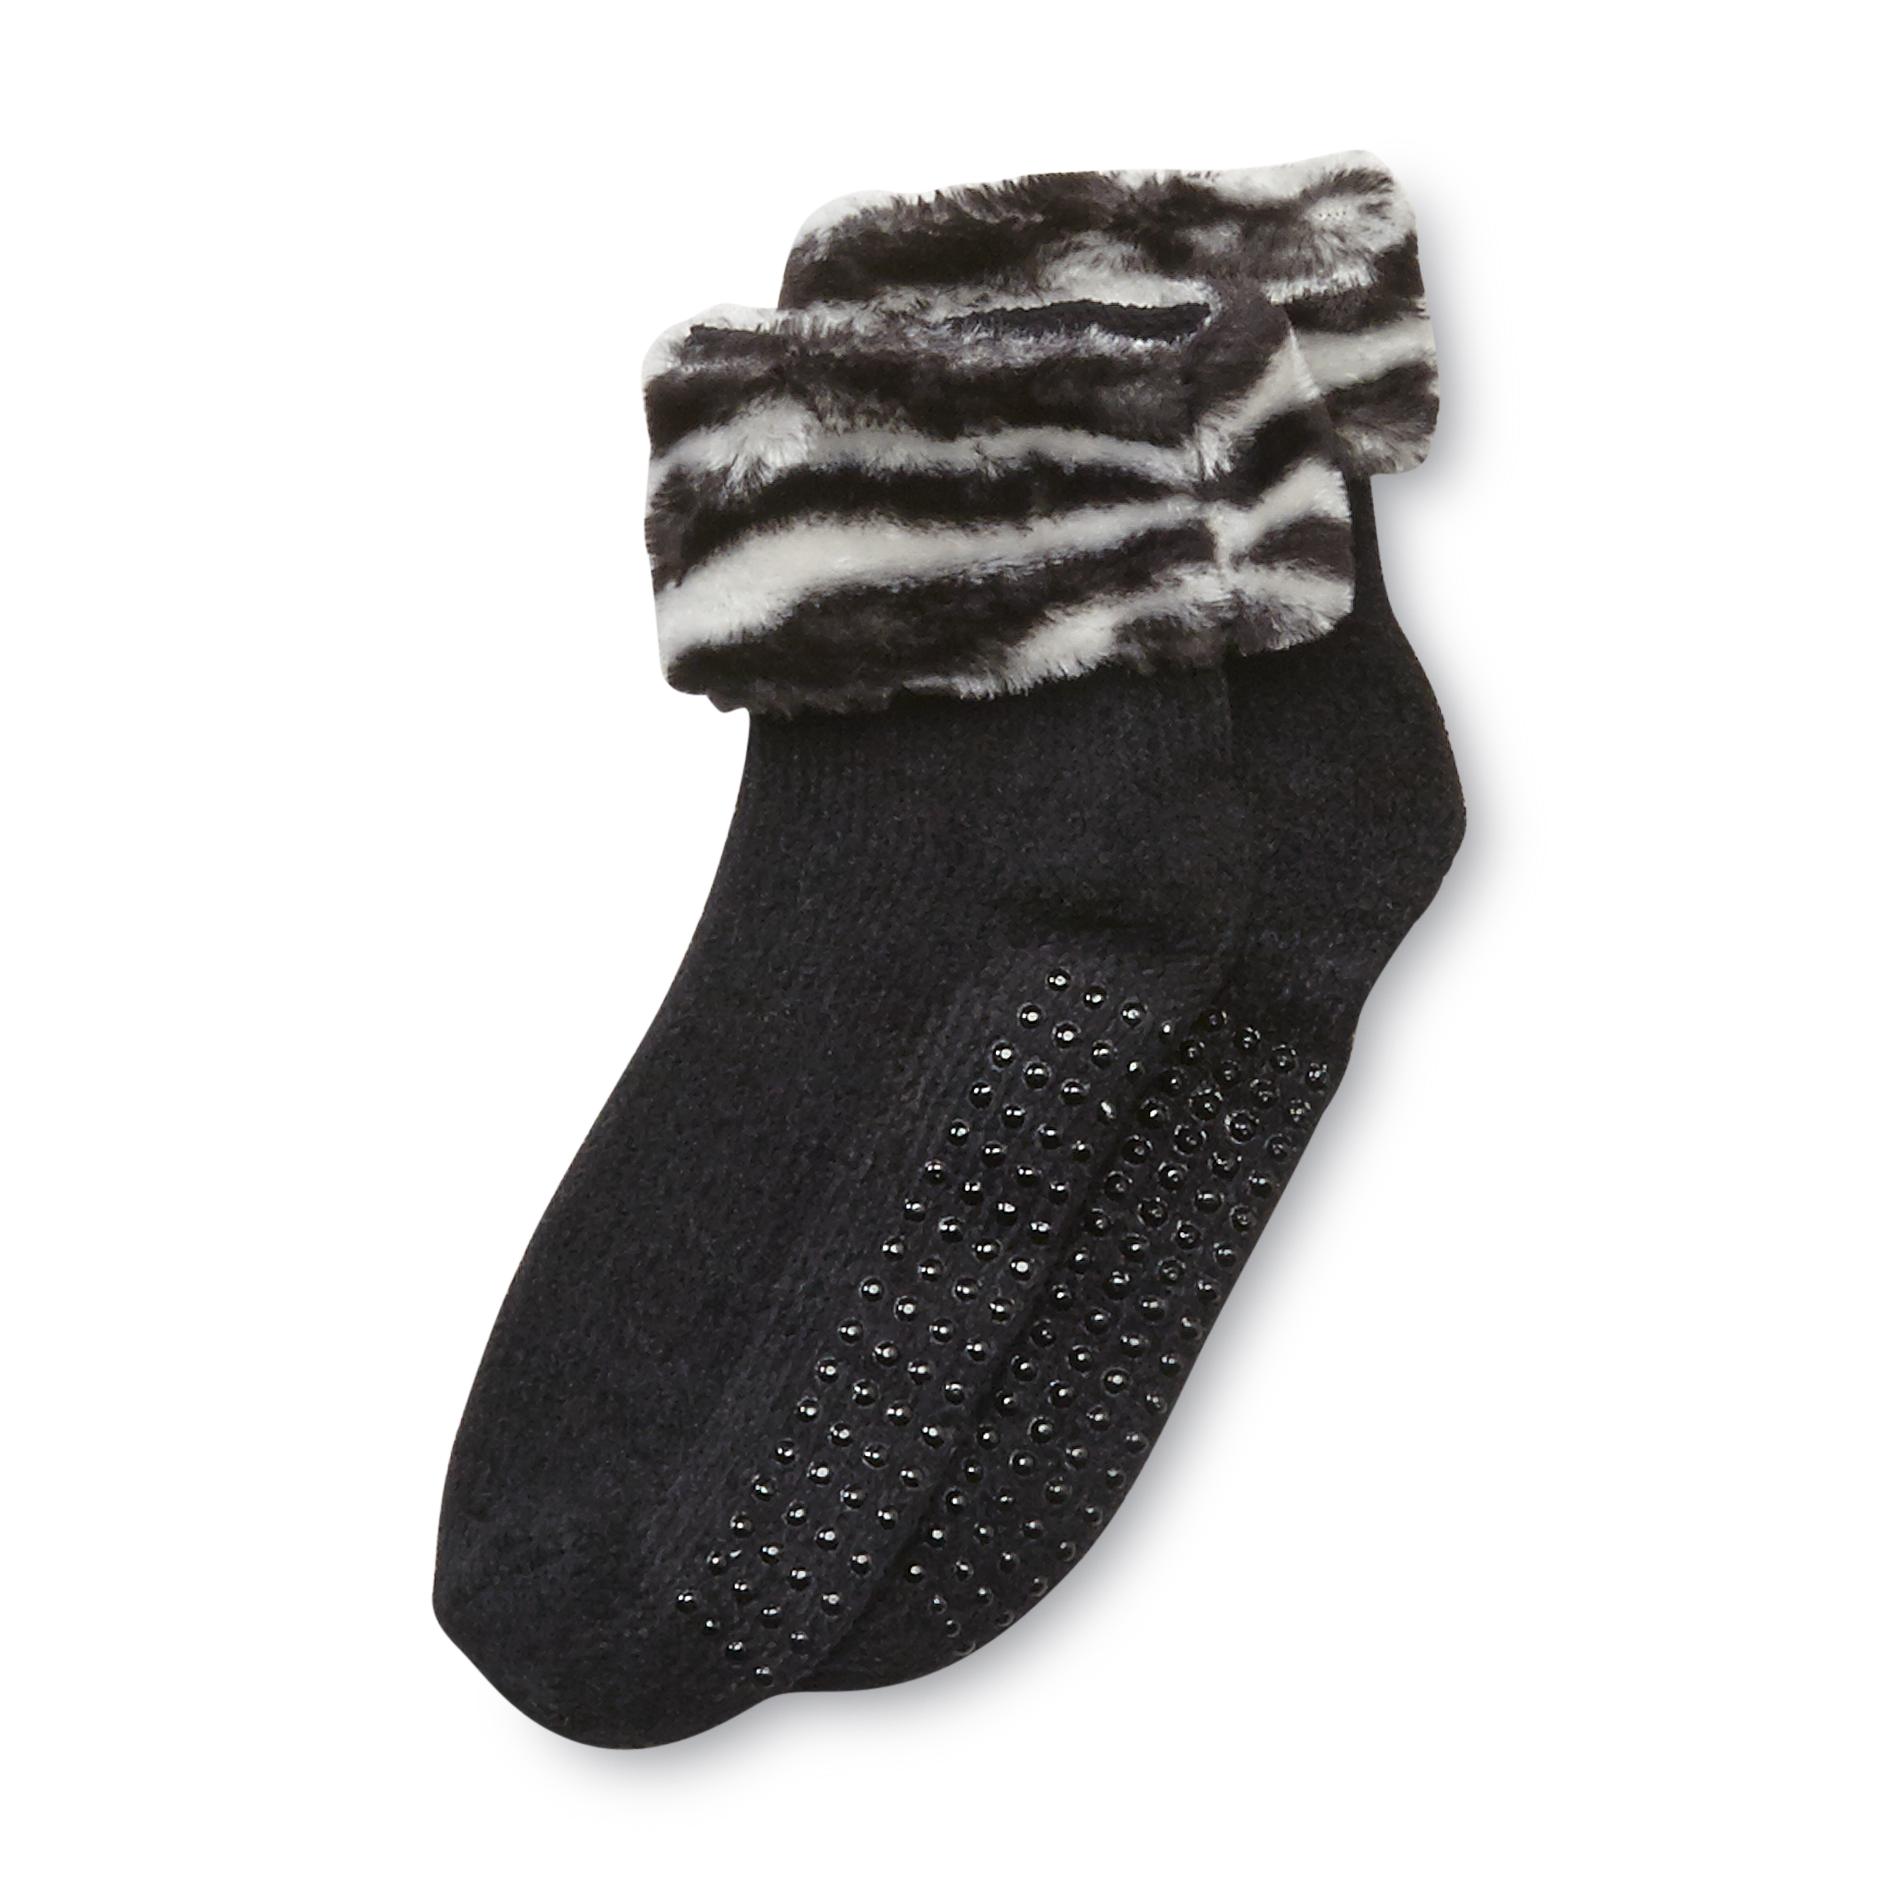 Joe Boxer Women's Chenille Slipper Socks - Zebra Striped